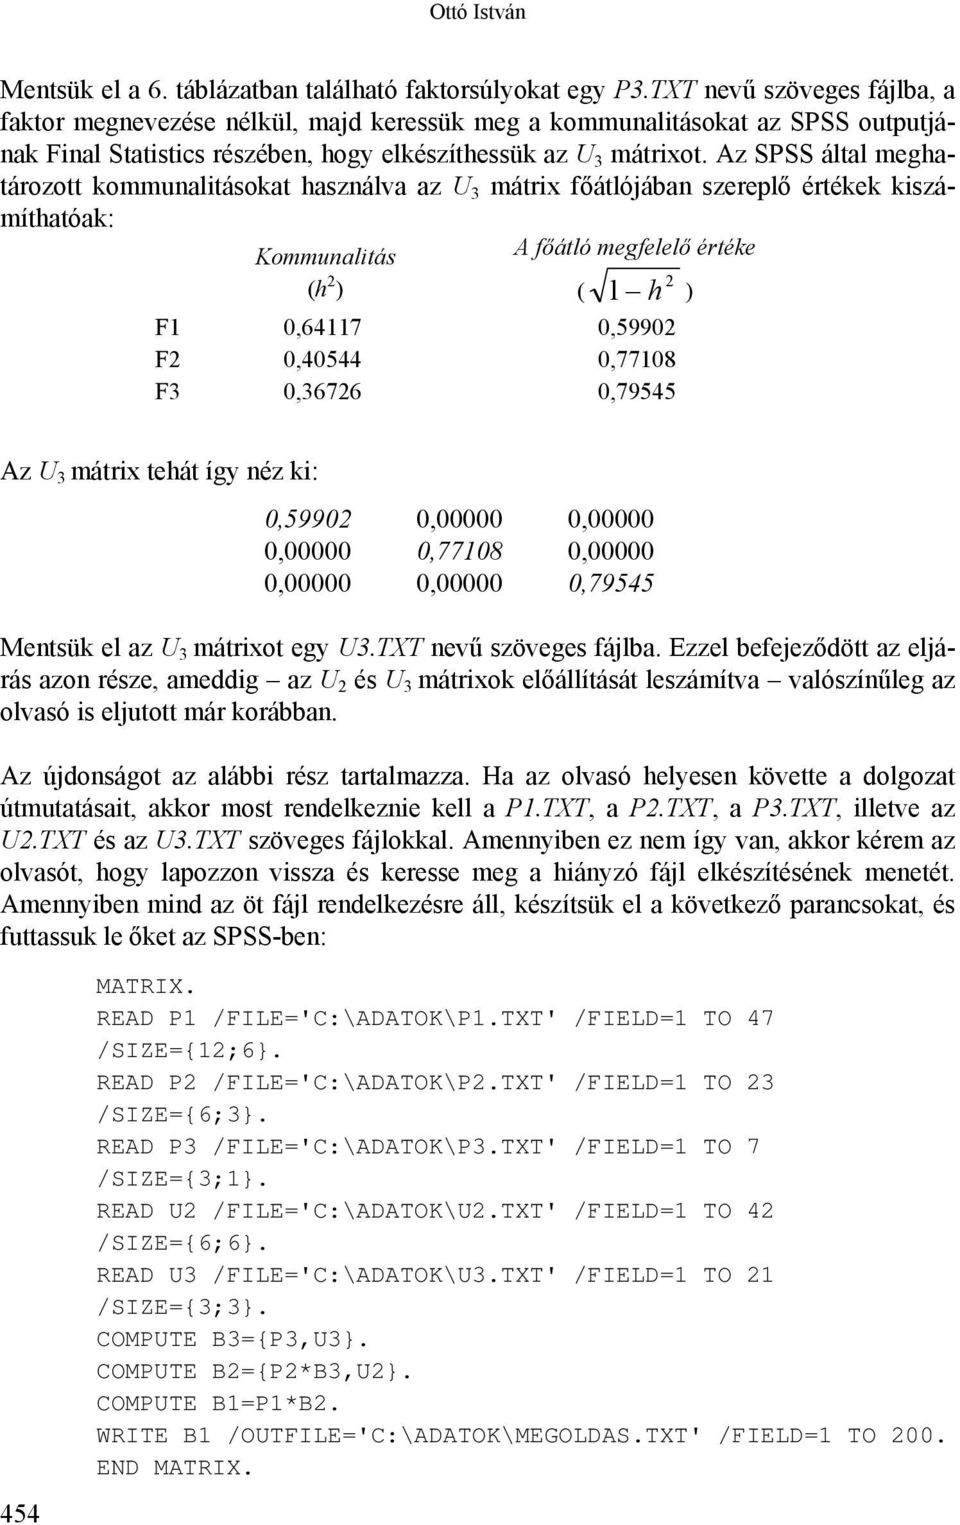 Az SPSS által meghatározott kommunalitásokat használva az U 3 mátrix főátlójában szereplő értékek kiszámíthatóak: Kommunalitás (h 2 ) A főátló megfelelő értéke ( 1 h 2 ) F1 0,64117 0,59902 F2 0,40544